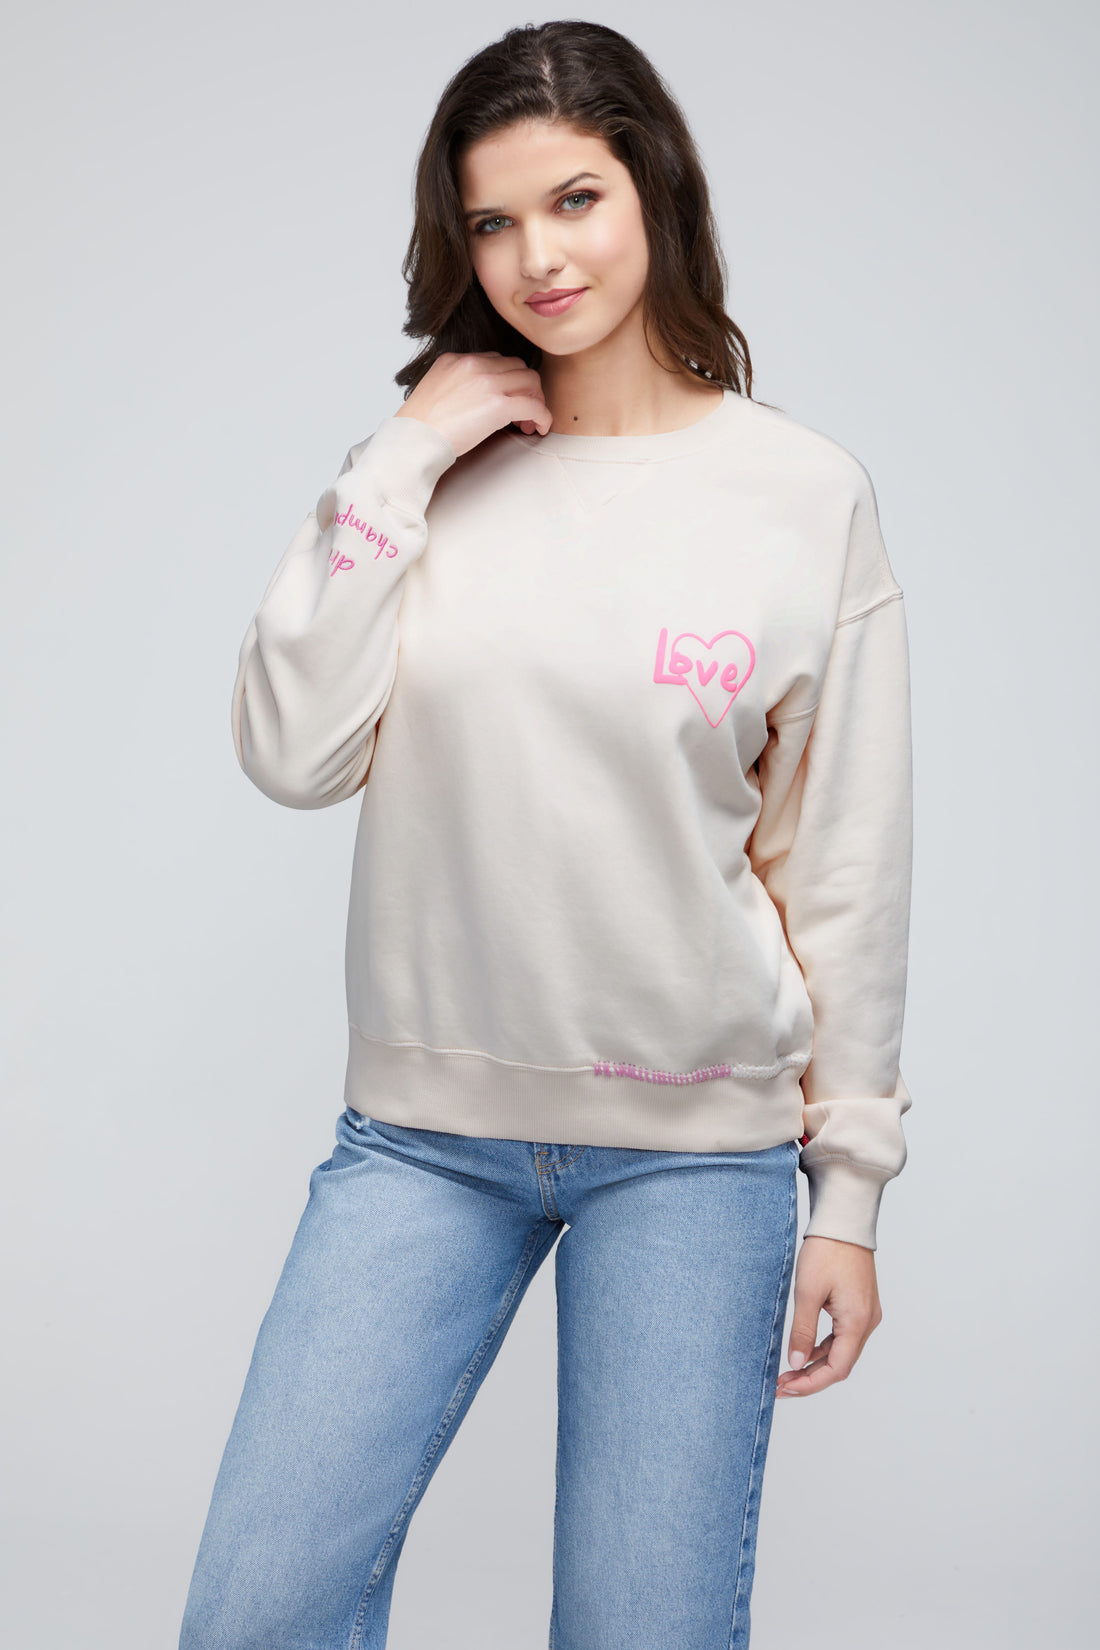 Wildfox Pink Black Leopard Print Pullover Sweatshirt Sz L